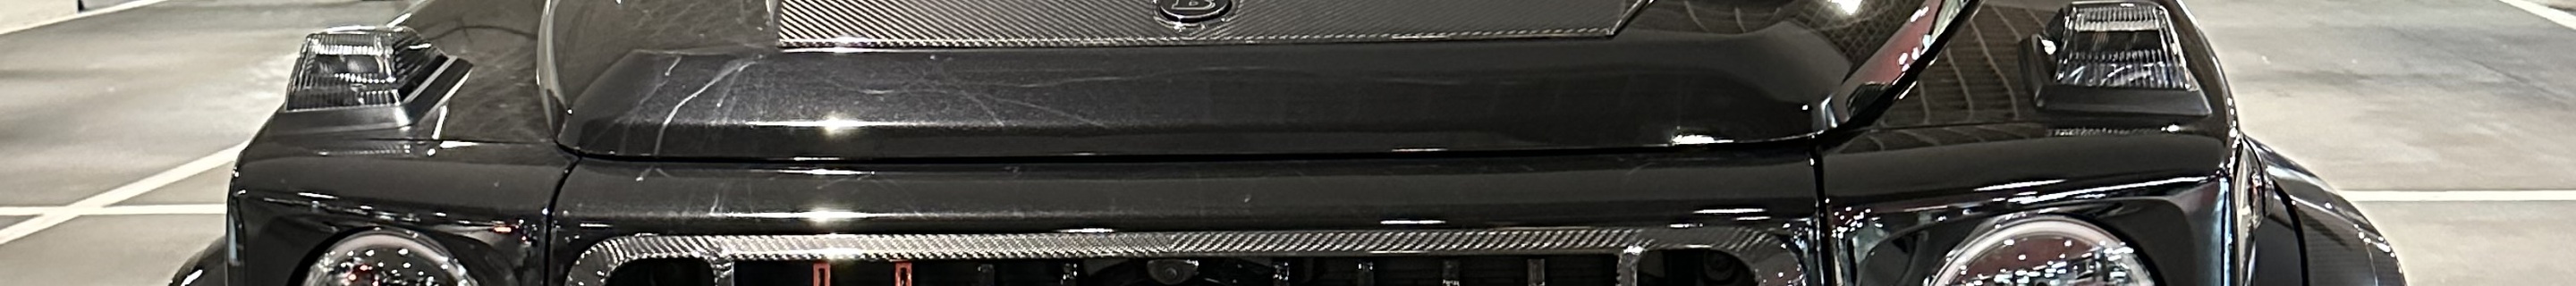 Mercedes-AMG Brabus G 900 Rocket W463 2018